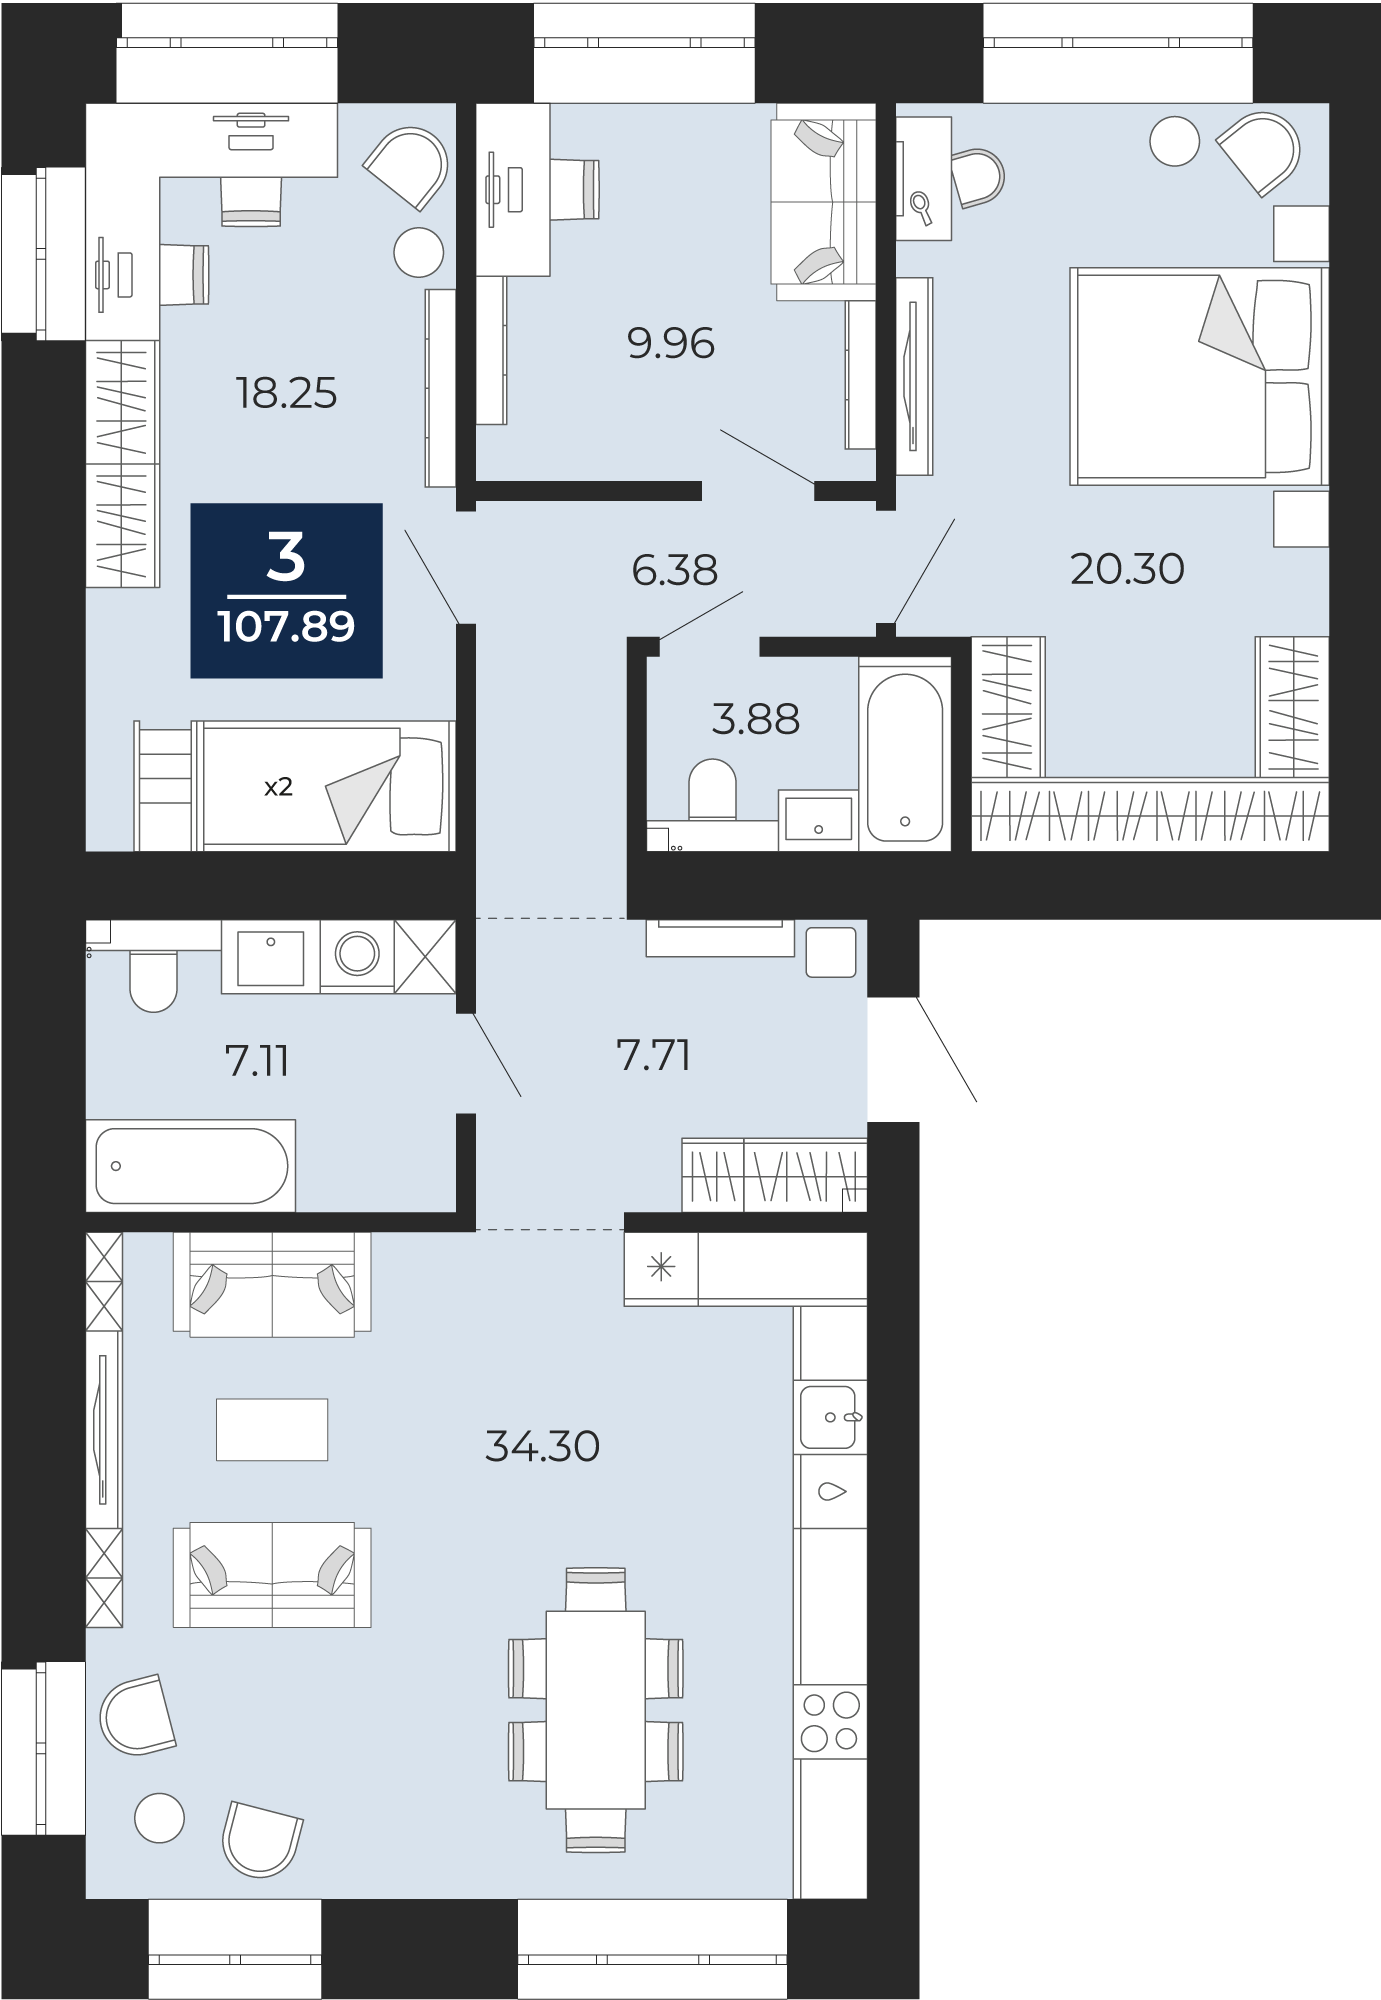 Квартира № 195, 3-комнатная, 107.89 кв. м, 2 этаж